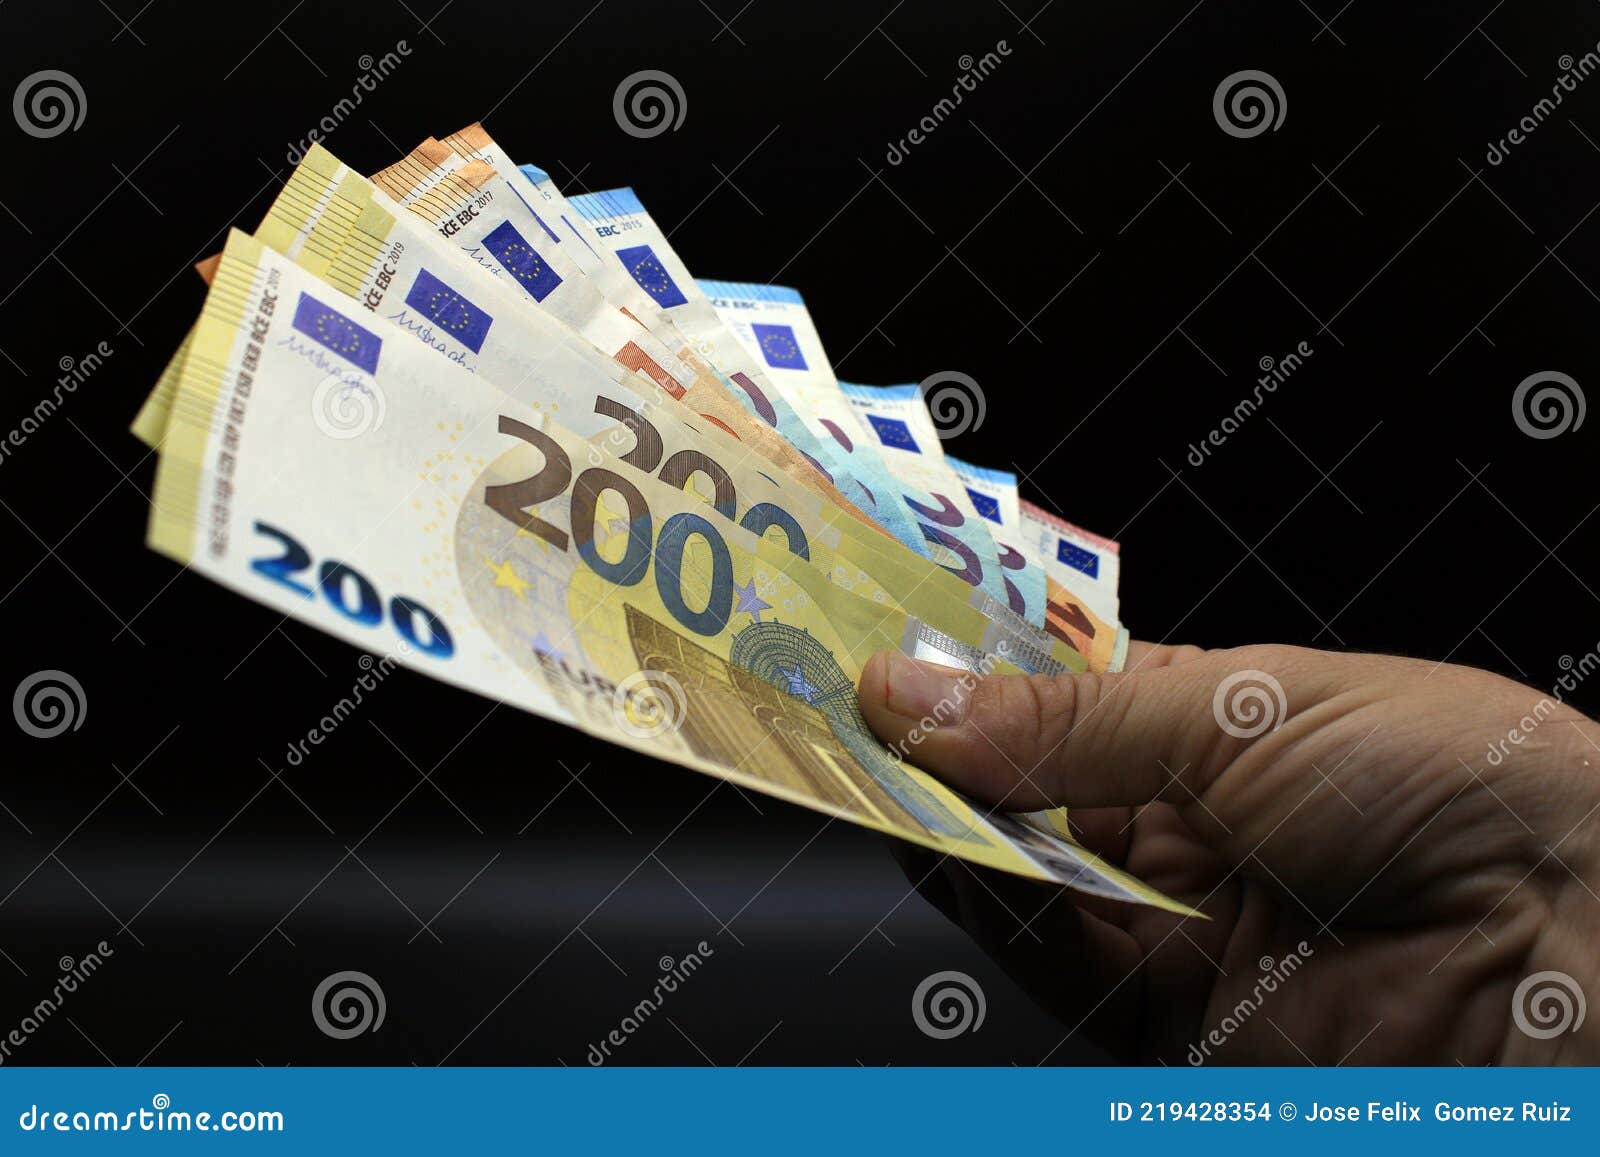 hands offering euro bills